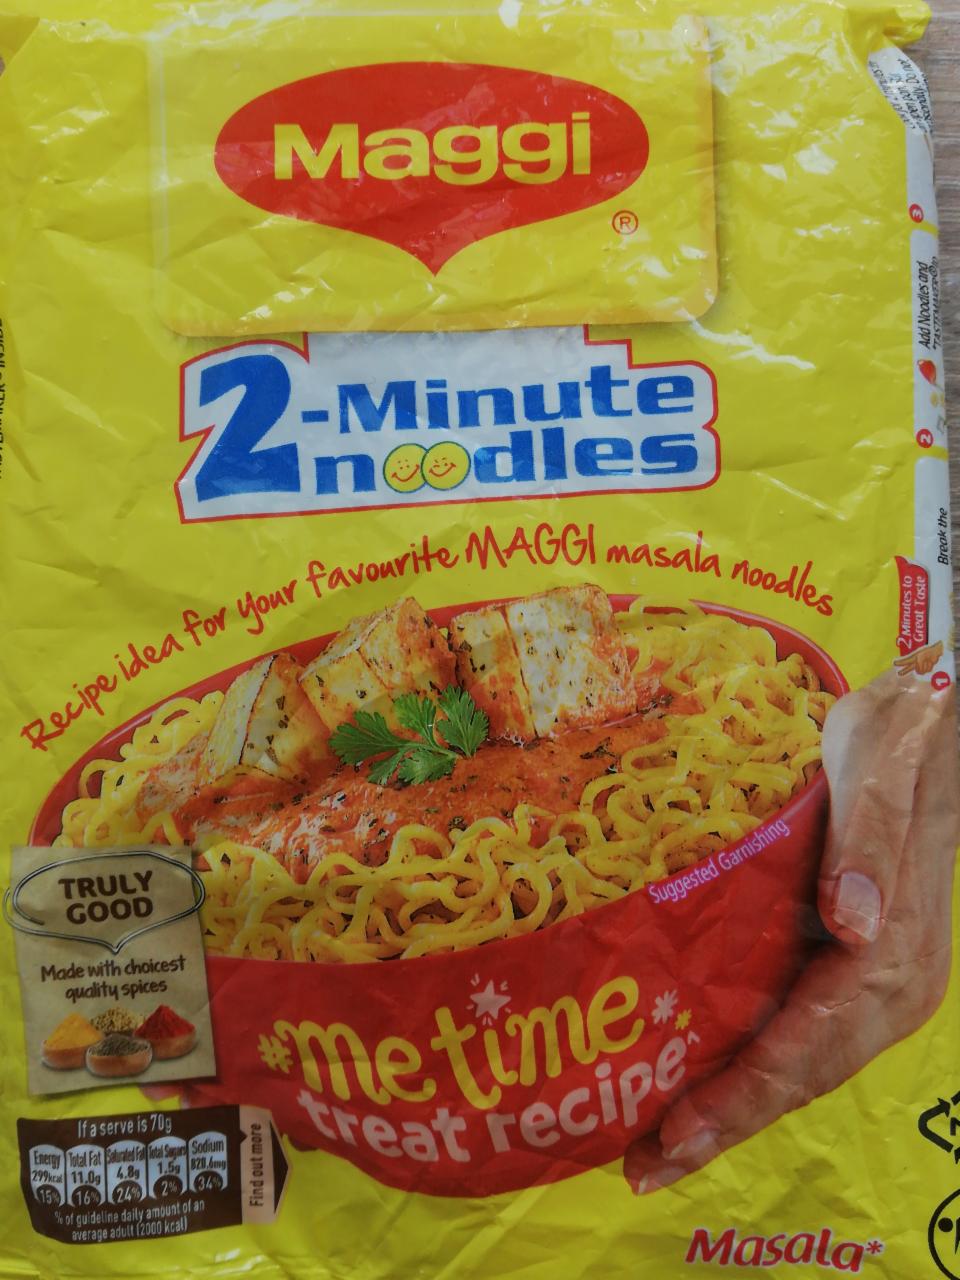 Zdjęcia - Maggi 2 minutes noodles